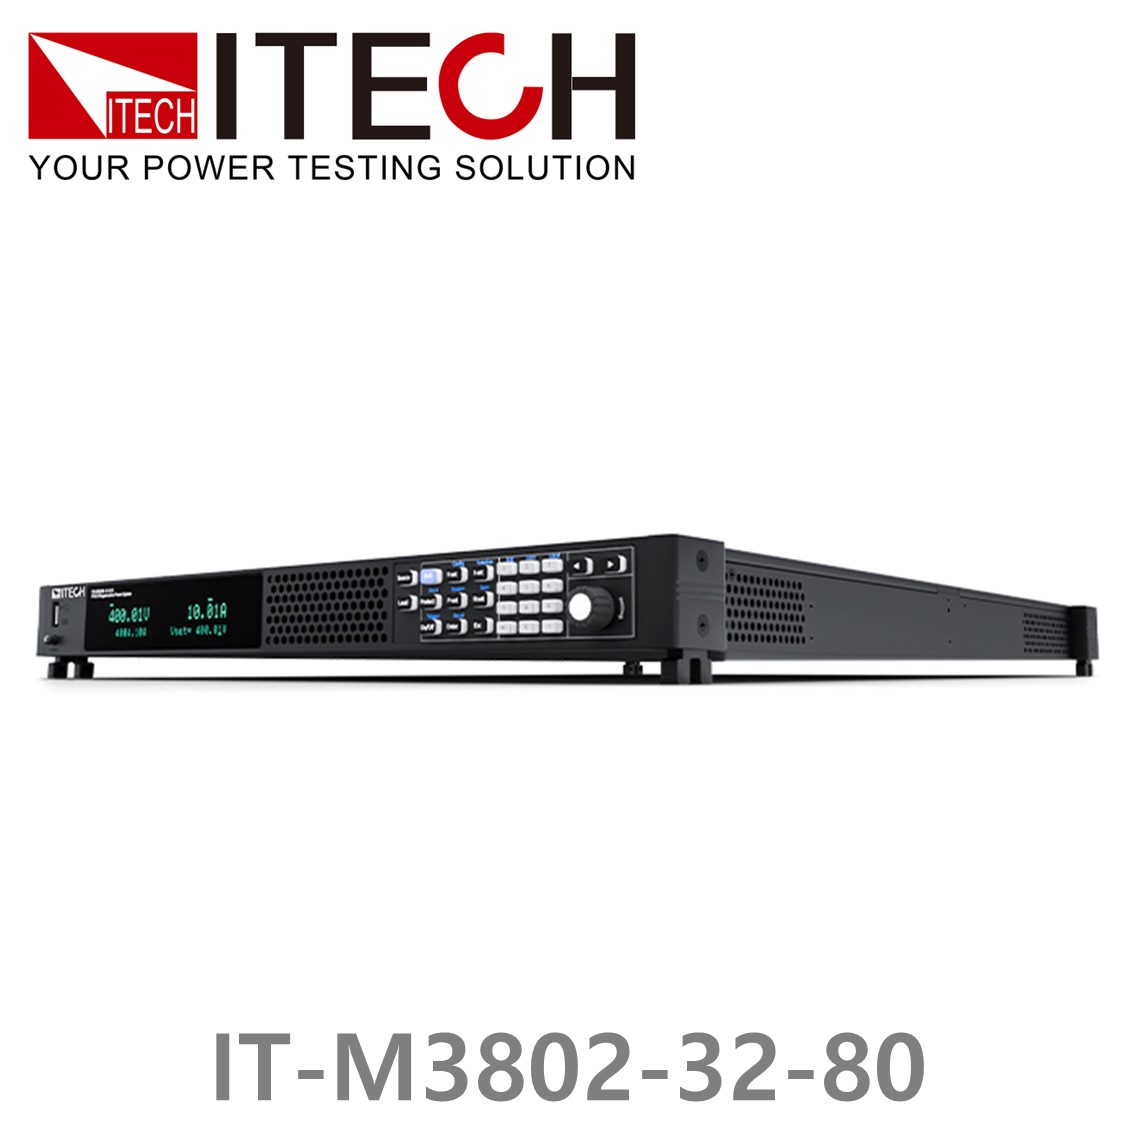 [ ITECH ] IT-M3802-32-80, 32V/80A/2000W DC 전자로드, DC전자부하기